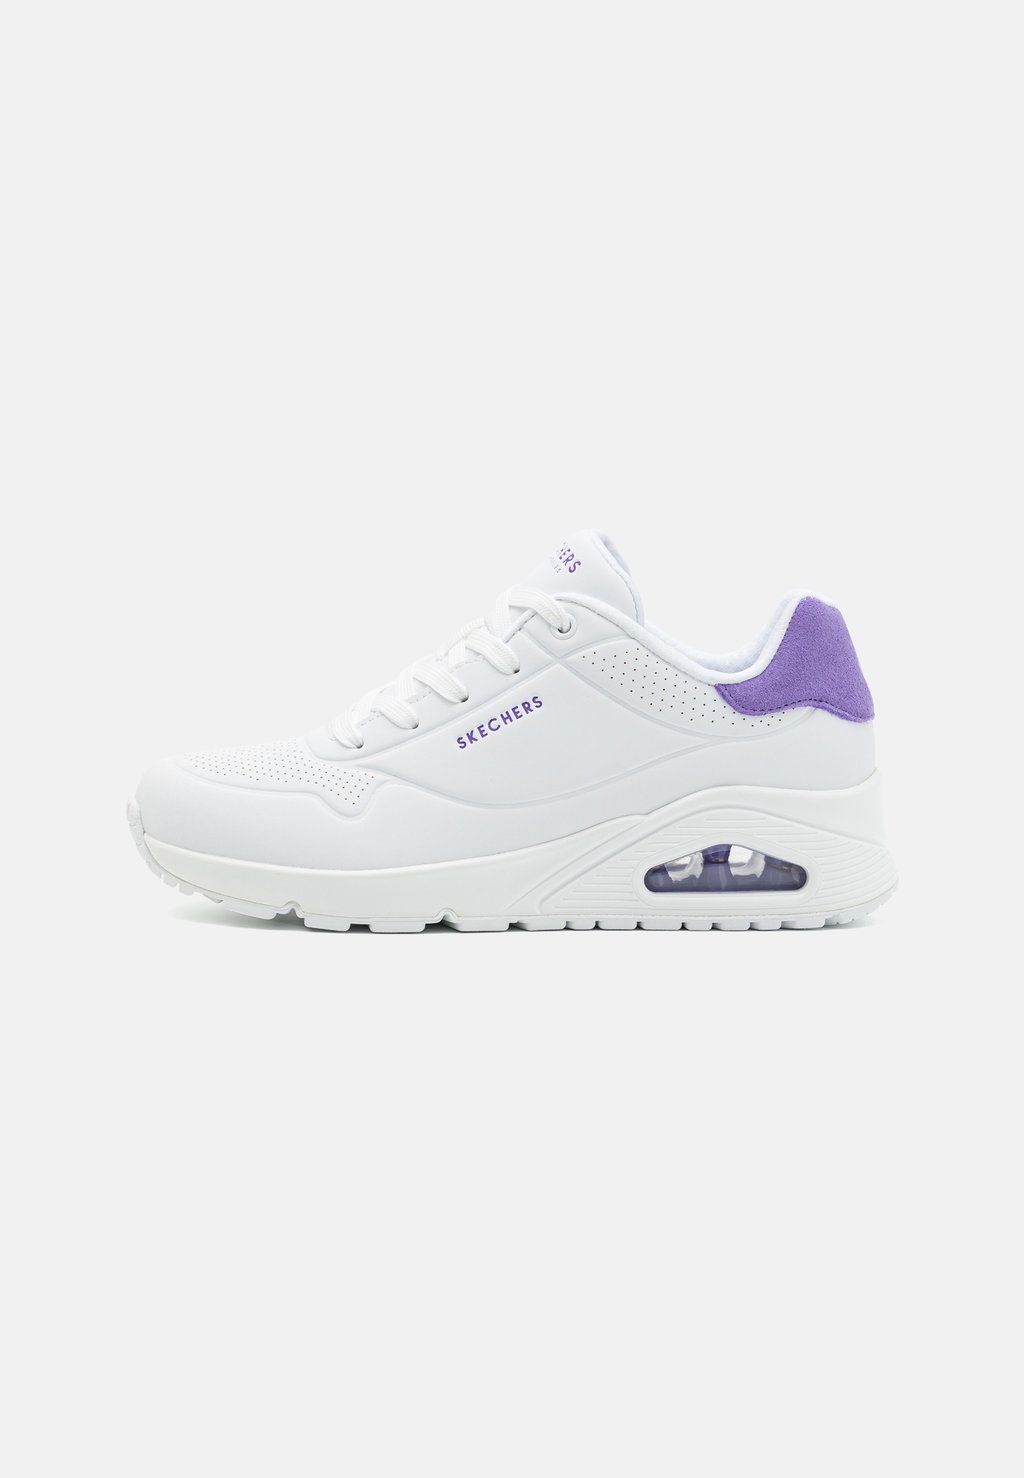 Низкие кроссовки Uno Skechers Sport, цвет white/purple кроссовки skechers sport uno 2 white